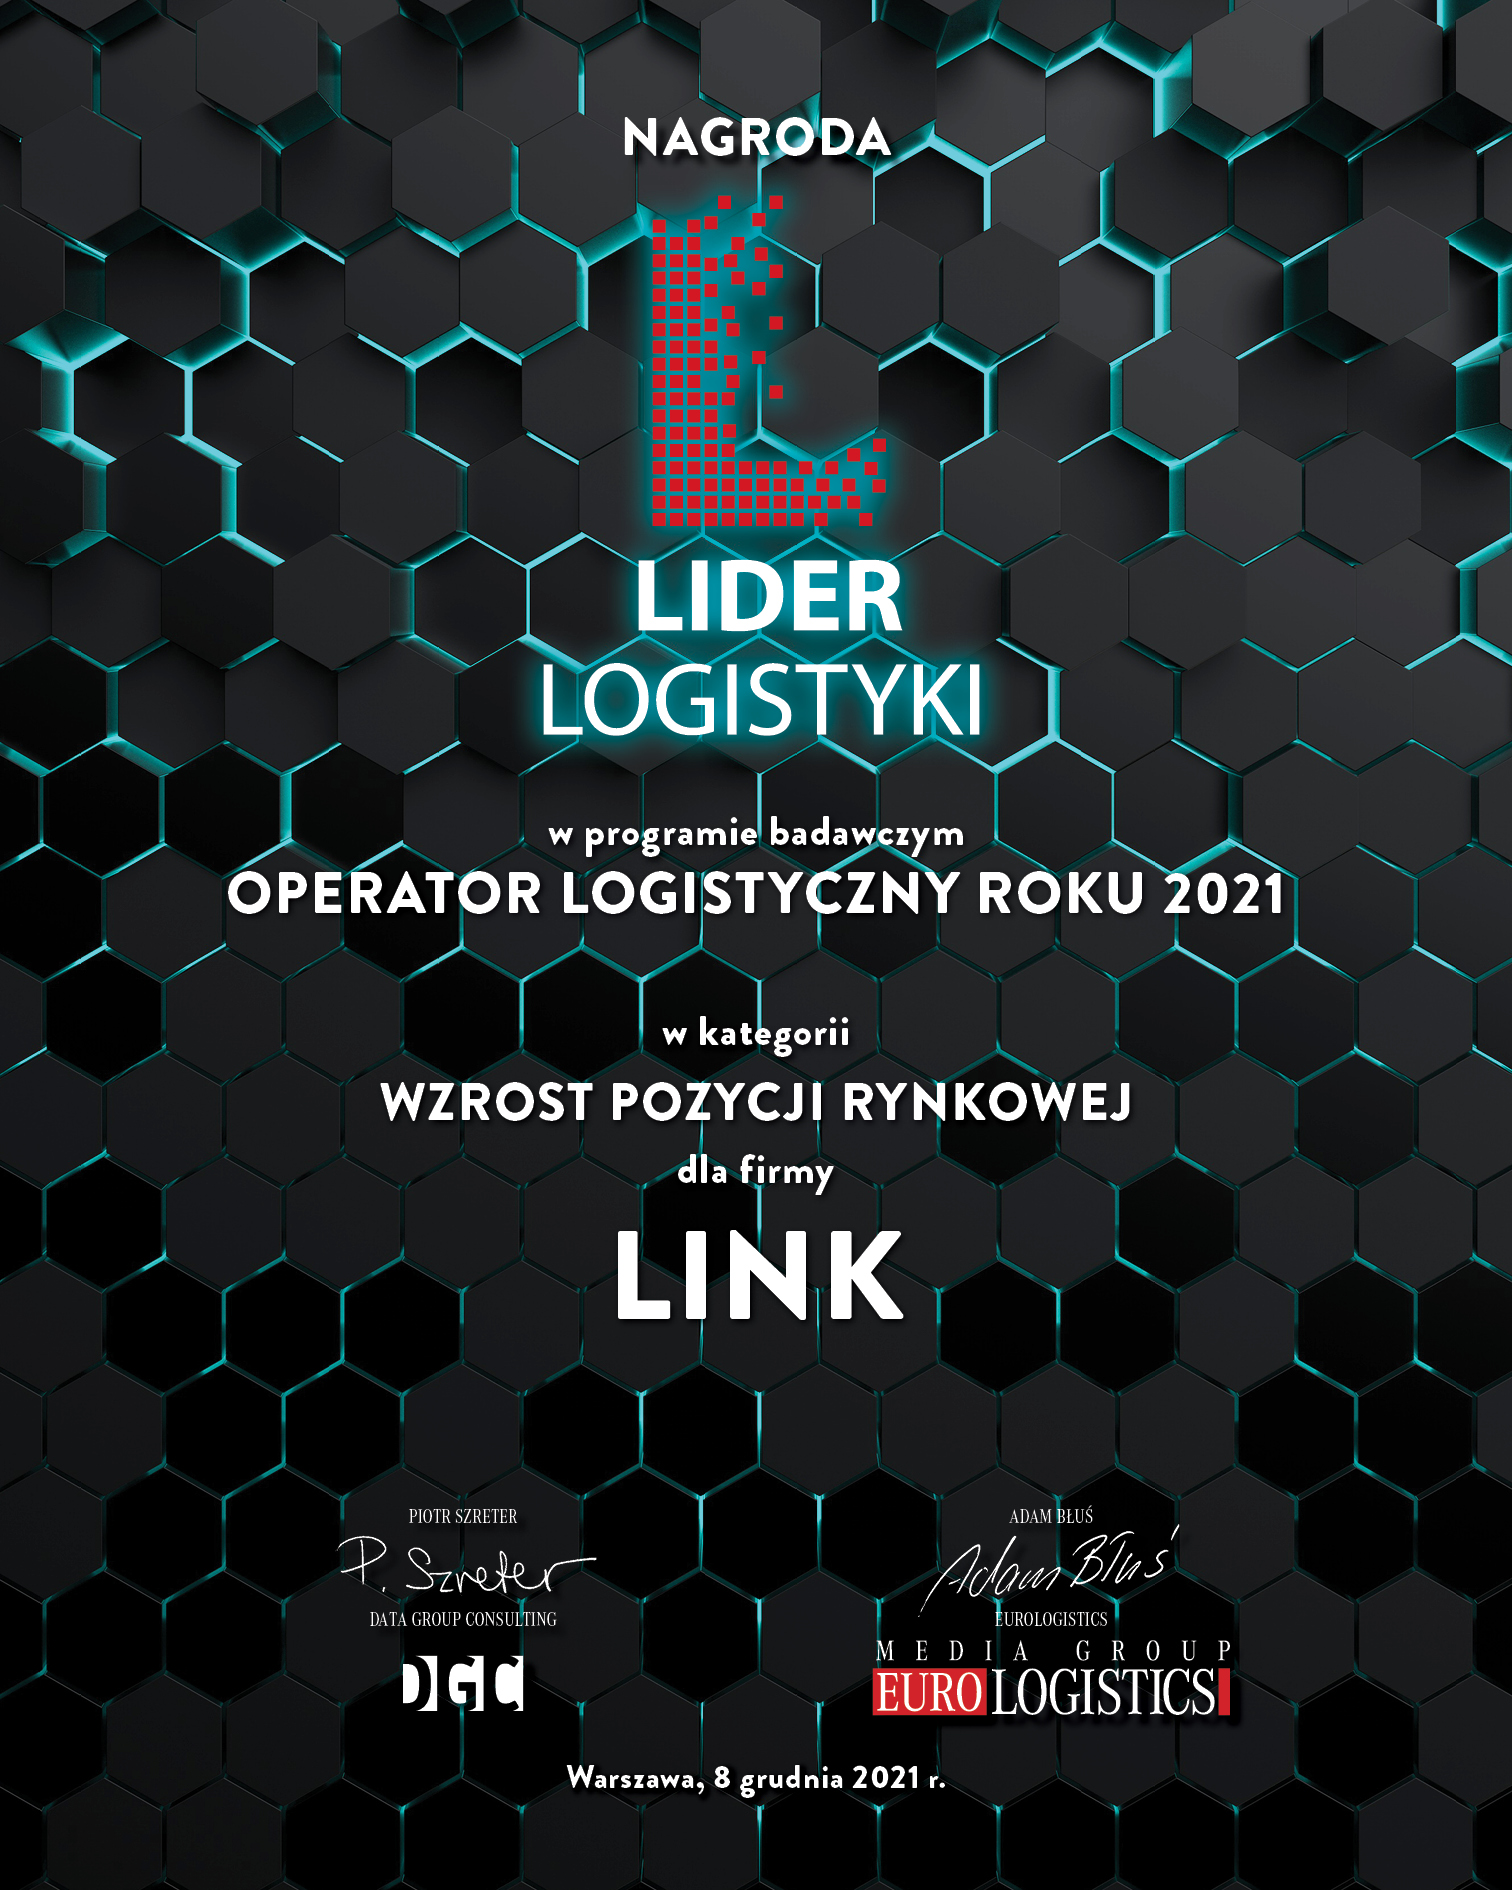 LINK - Liderem Logistyki w kategorii Wzrost Pozycji Rynkowej.